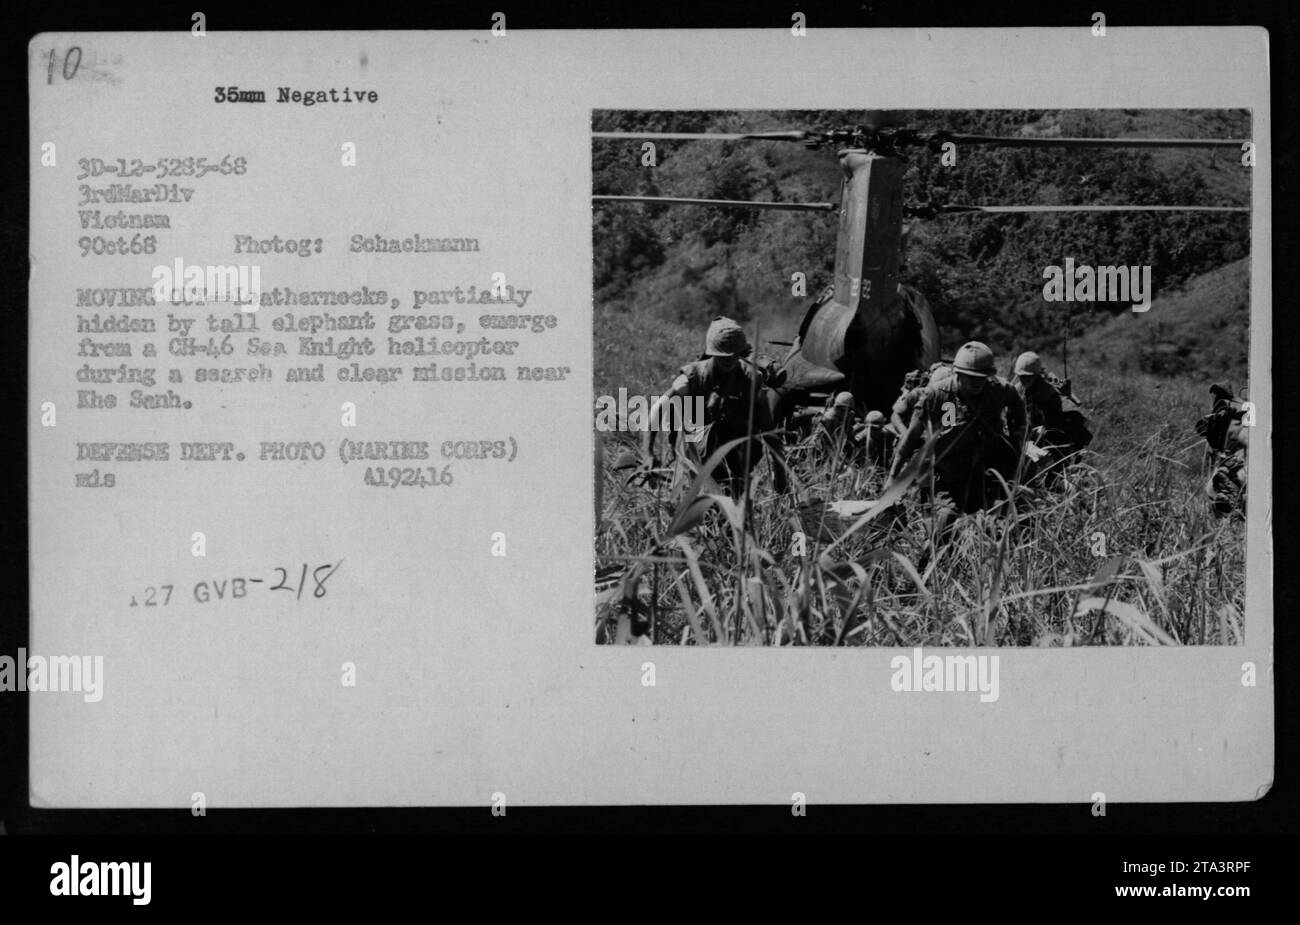 I Marines statunitensi sbarcano da un elicottero CH-46 Sea Knight durante una missione di ricerca vicino al Senh il 9 ottobre 1968. La foto cattura le truppe parzialmente nascoste da un'alta erba di elefante mentre si spostano durante la guerra del Vietnam. È stata scattata dal fotografo Schaclamann ed è una foto del Dipartimento della difesa. Foto Stock